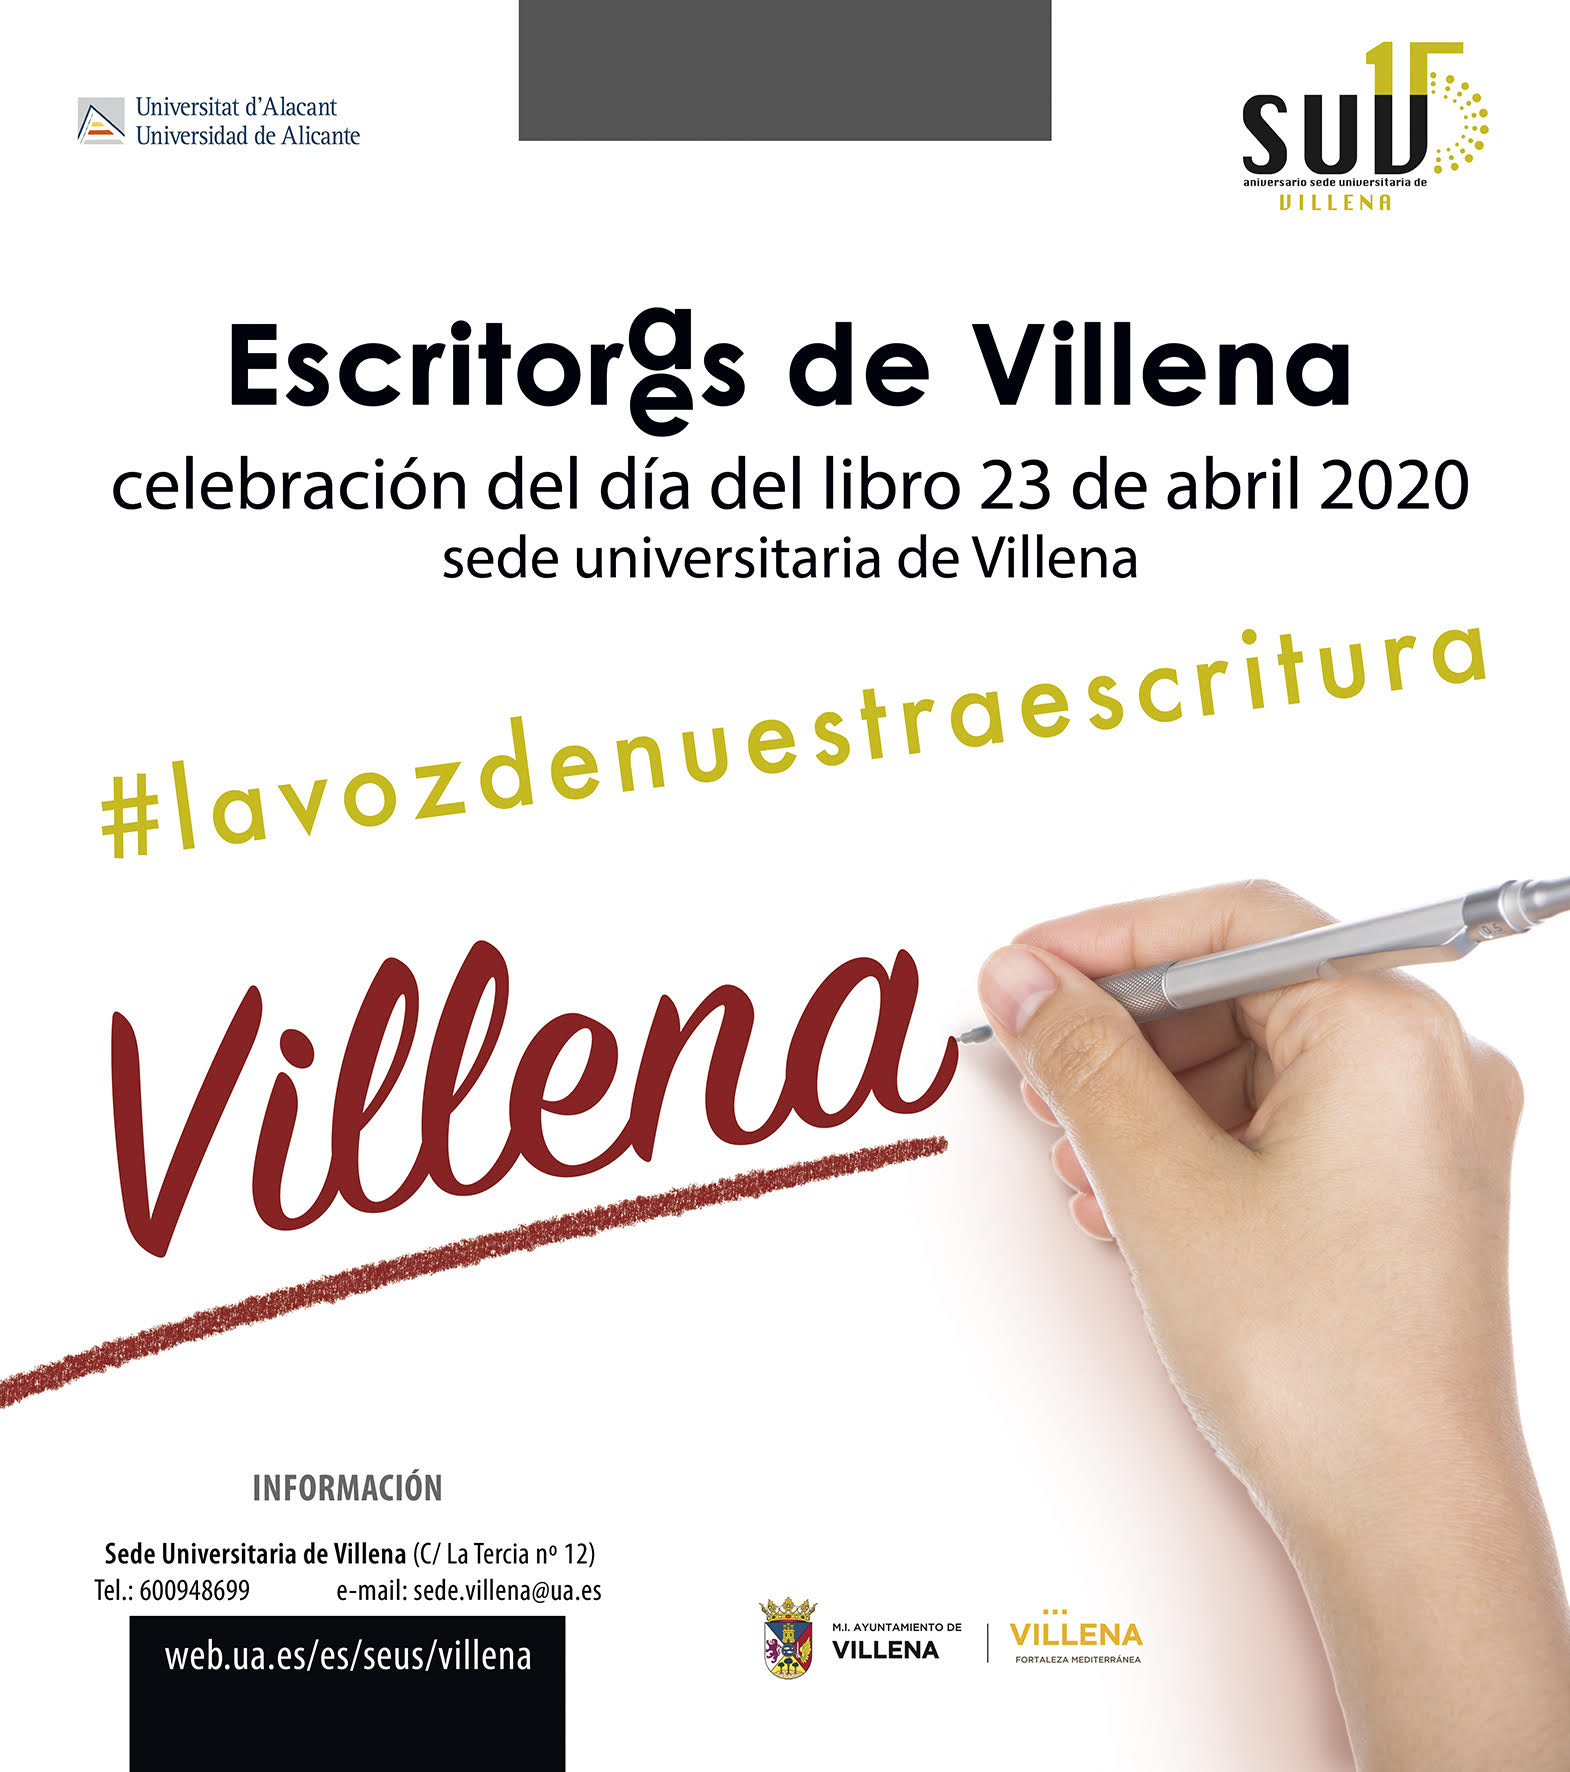 La Sede Universitaria de Villena celebra el Día del Libro a través de las voces de escritores villenenses